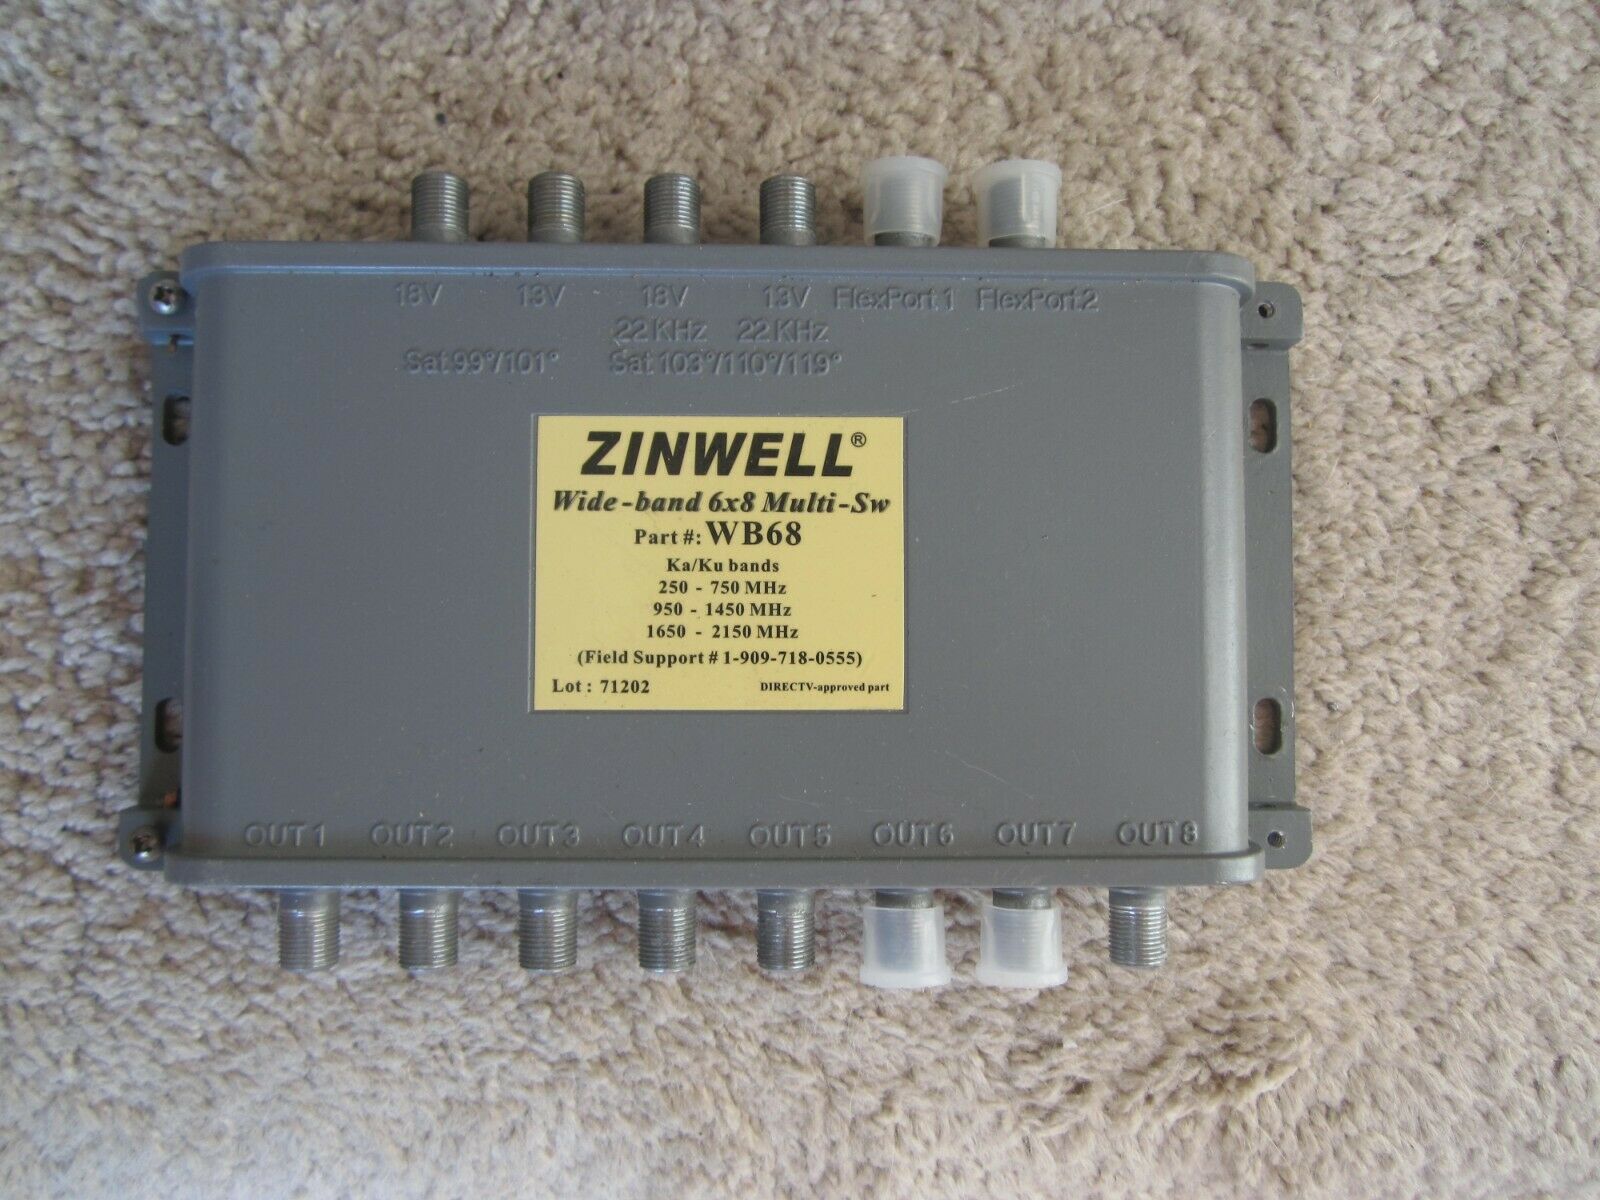 Zinwell Wb68 Wideband 6x8 Multiswitch Ka/ku Dish Antenna Directv Compatible